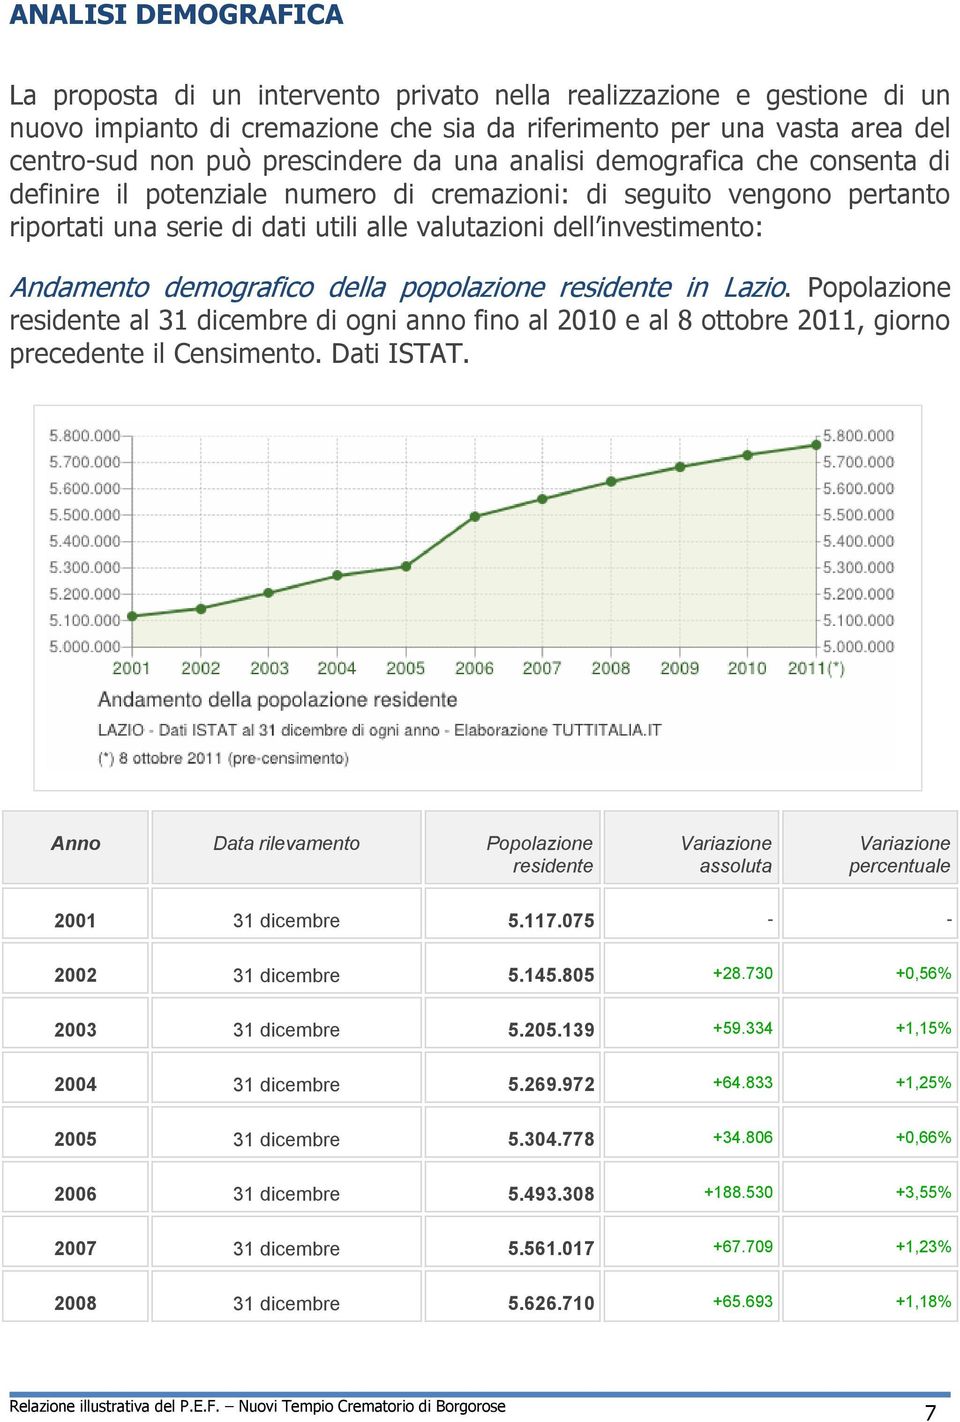 demografico della popolazione residente in Lazio. Popolazione residente al 31 dicembre di ogni anno fino al 2010 e al 8 ottobre 2011, giorno precedente il Censimento. Dati ISTAT.